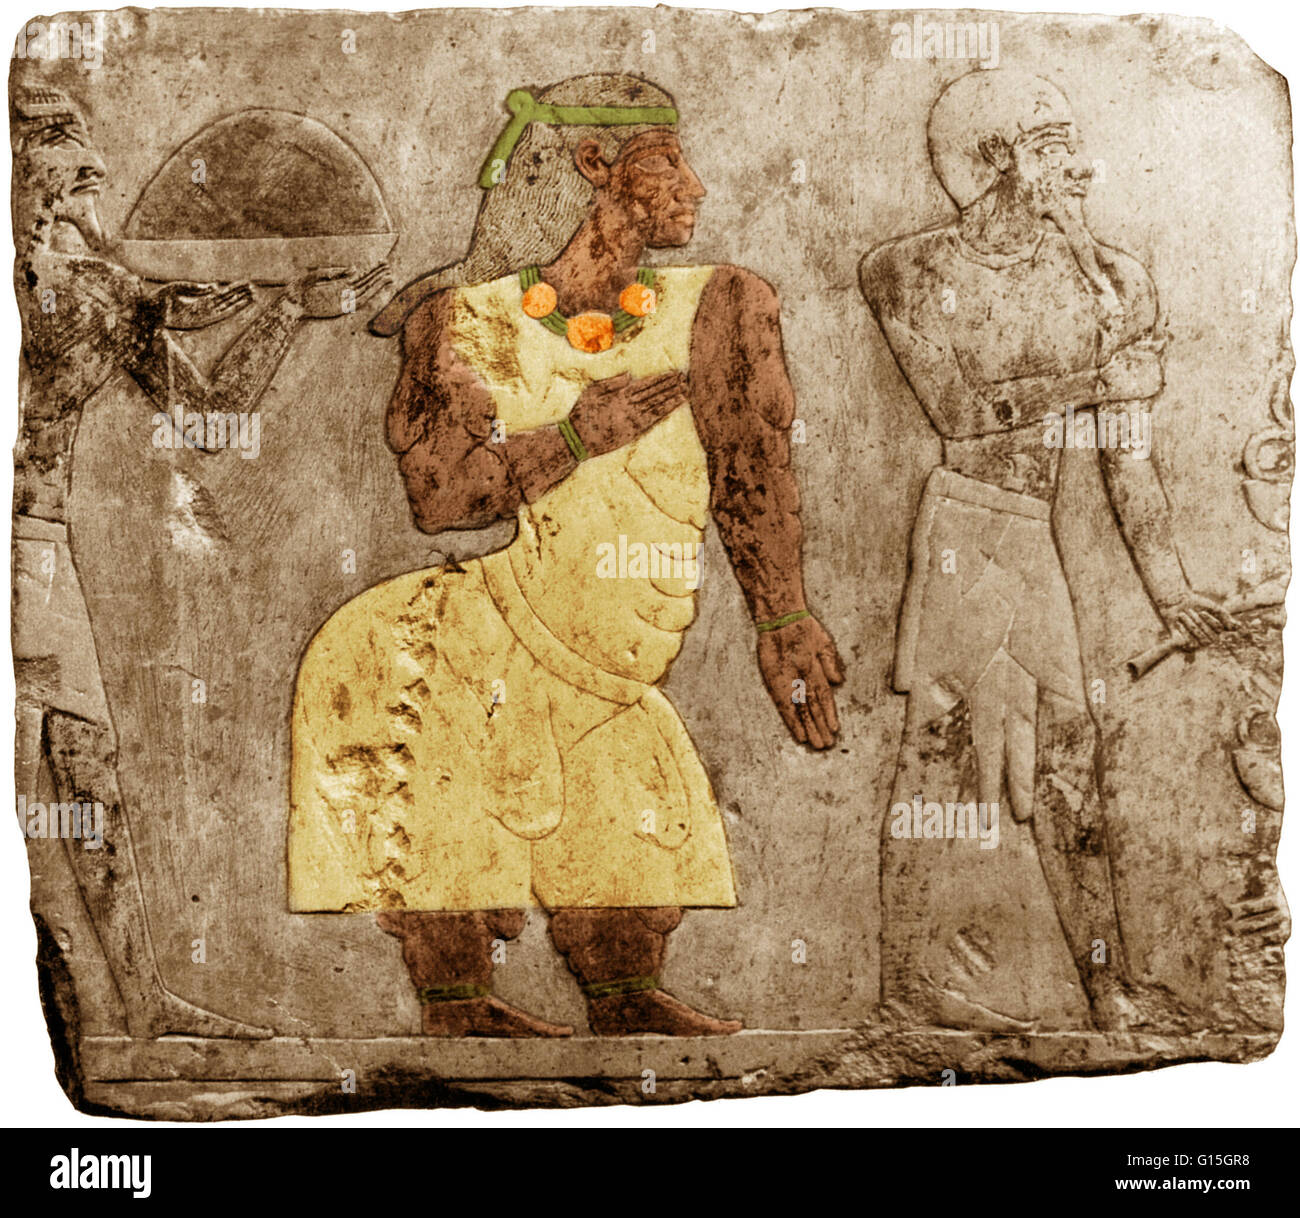 Wand Kunst aus dem alten Ägypten (ca. 1480 v. Chr.) zeigt eine Figur (hier in der Farbe) Muskeldystrophie leiden.  Einige Quellen identifizieren sie als Königin Hatshepsut, flankiert von zwei Sklaven. Stockfoto